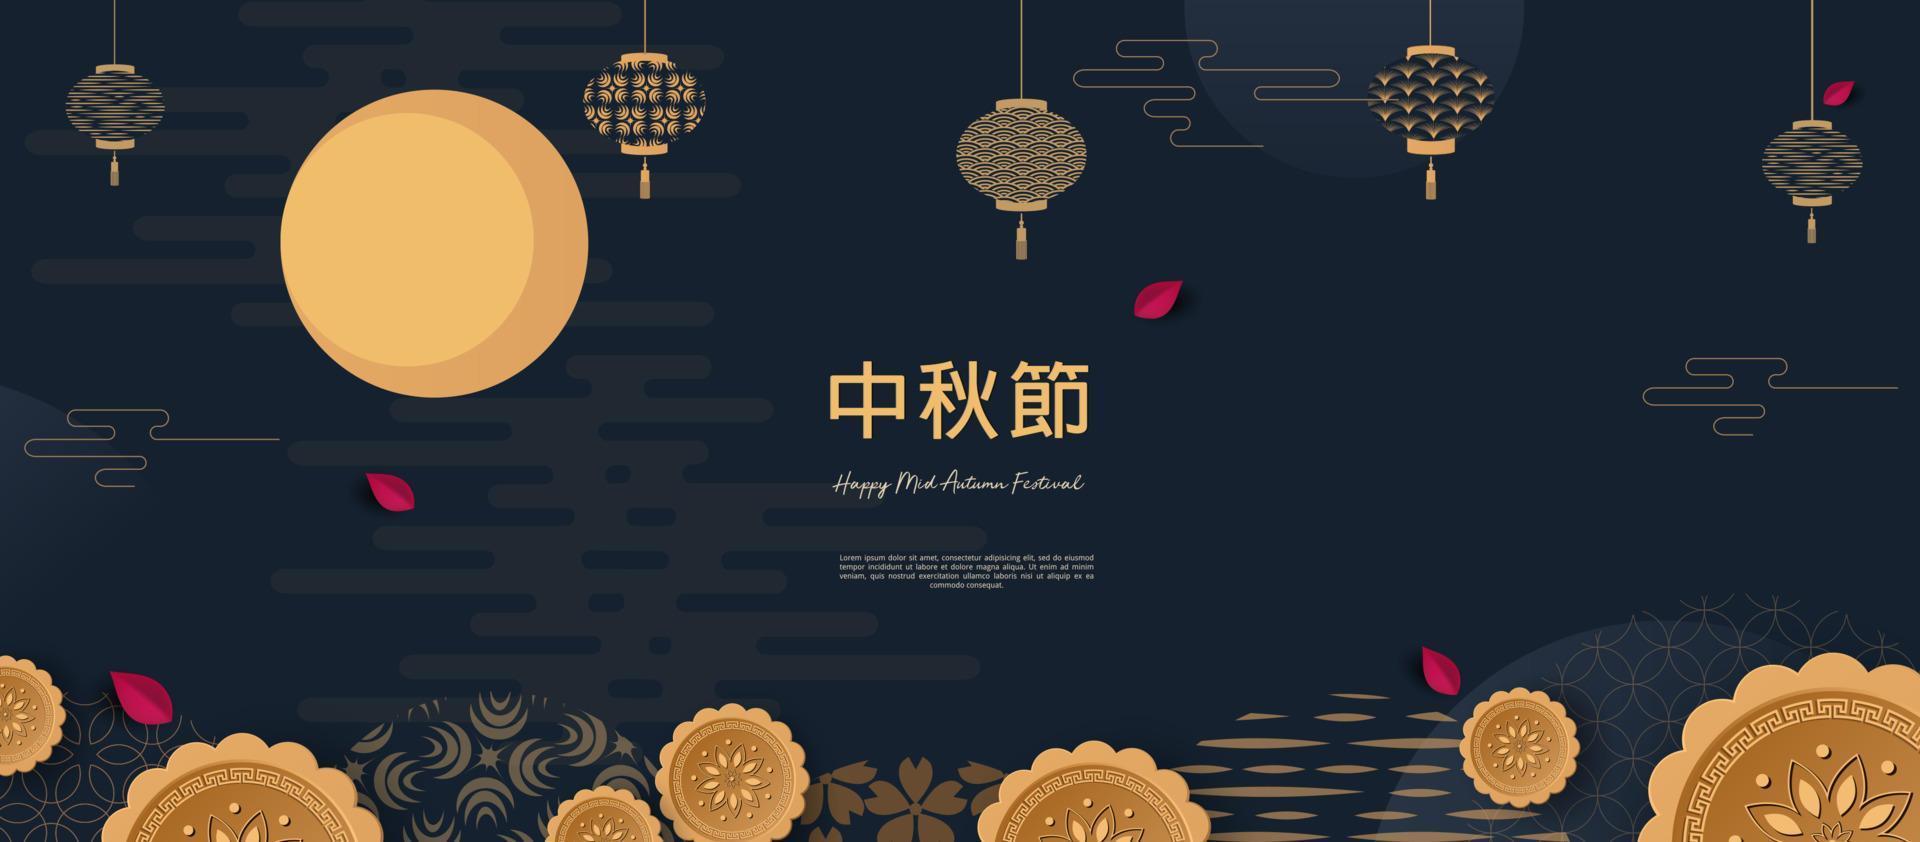 design de banner com padrões de círculos chineses tradicionais representando a lua cheia, texto chinês feliz no meio do outono, ouro em azul escuro. vetor